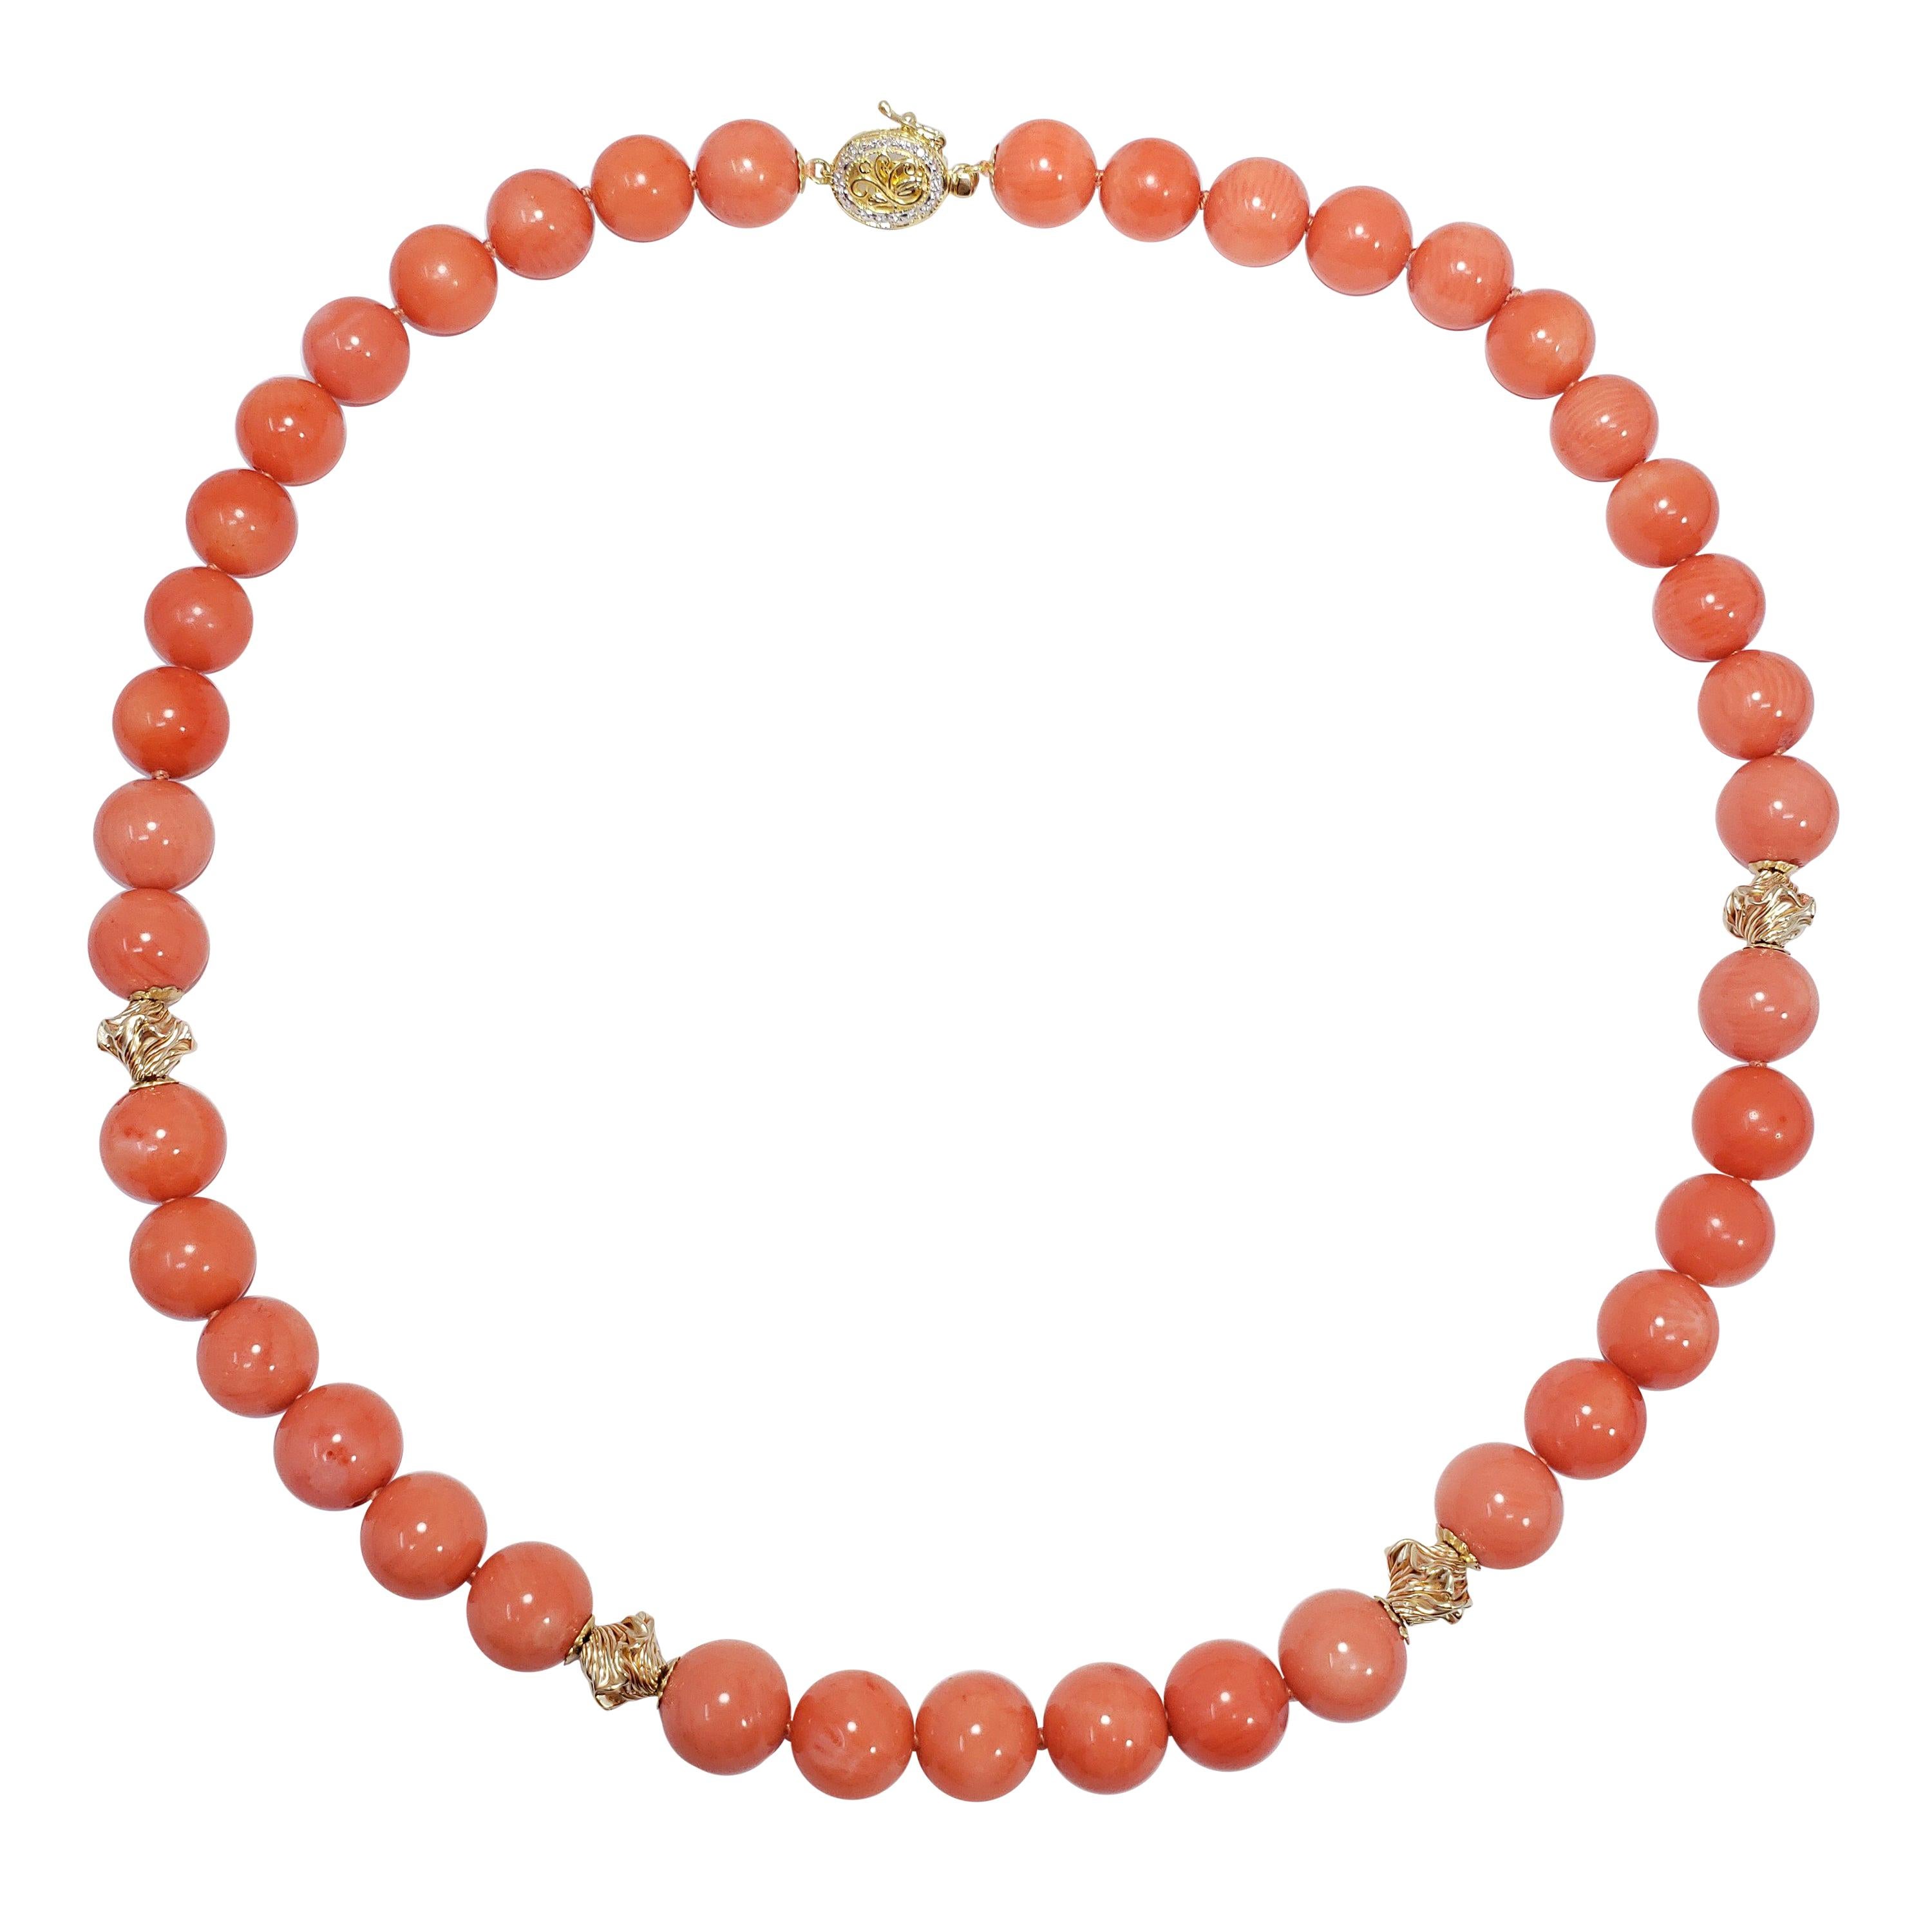 Gold und Diamant akzentuiert lachsfarbene Koralle Perlen geknotete String-Halskette, 14 Karat